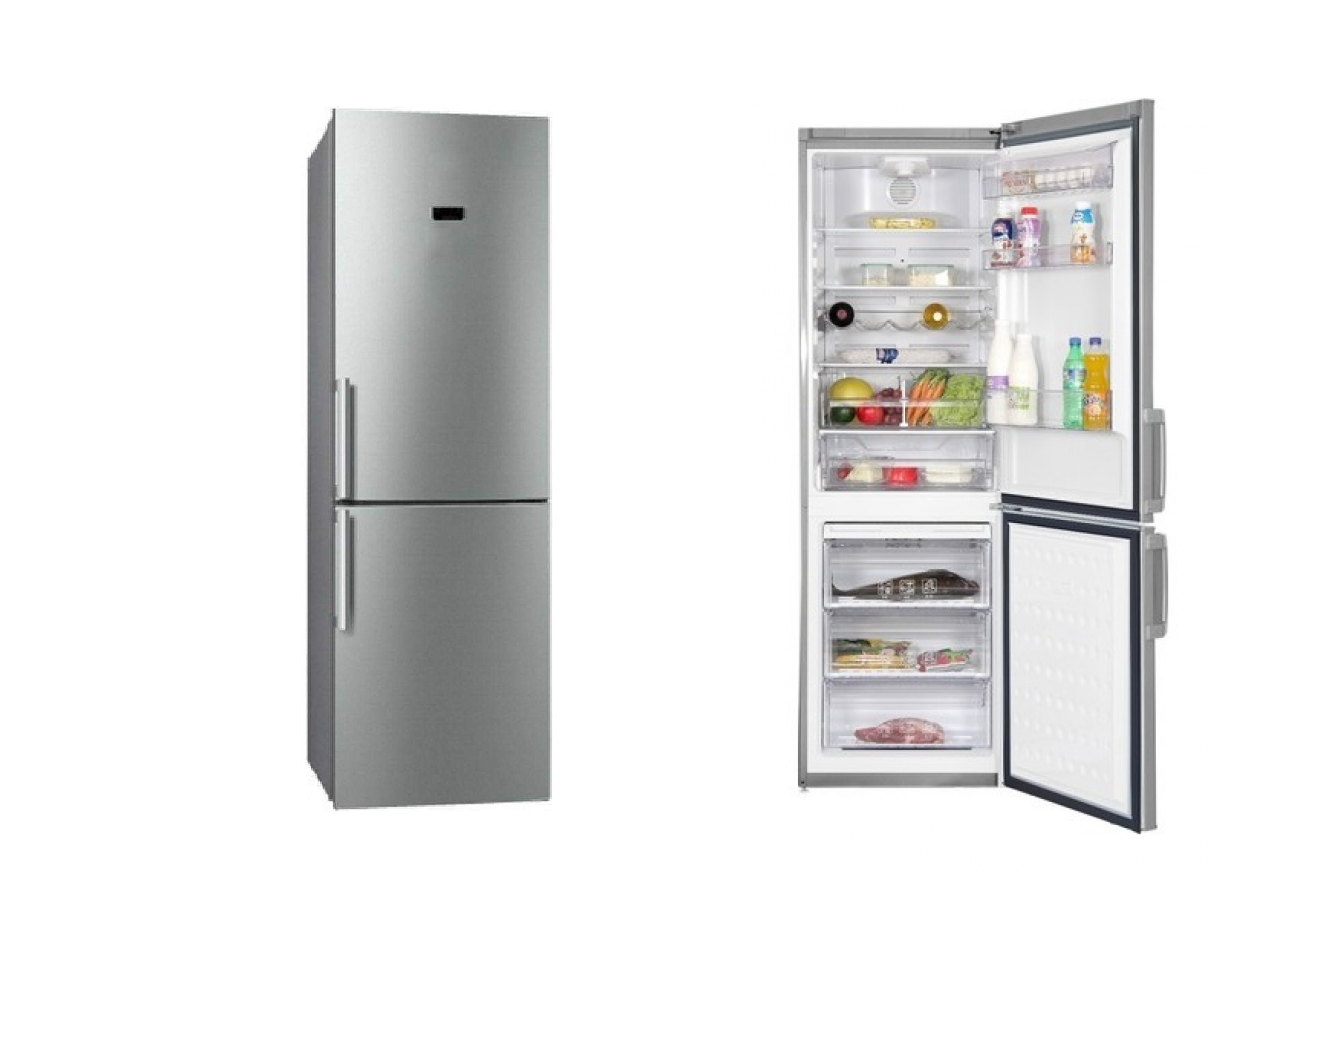 холодильник beko rcnk295e21s, купить в Красноярске холодильник beko rcnk295e21s,  купить в Красноярске дешево холодильник beko rcnk295e21s, купить в Красноярске минимальной цене холодильник beko rcnk295e21s